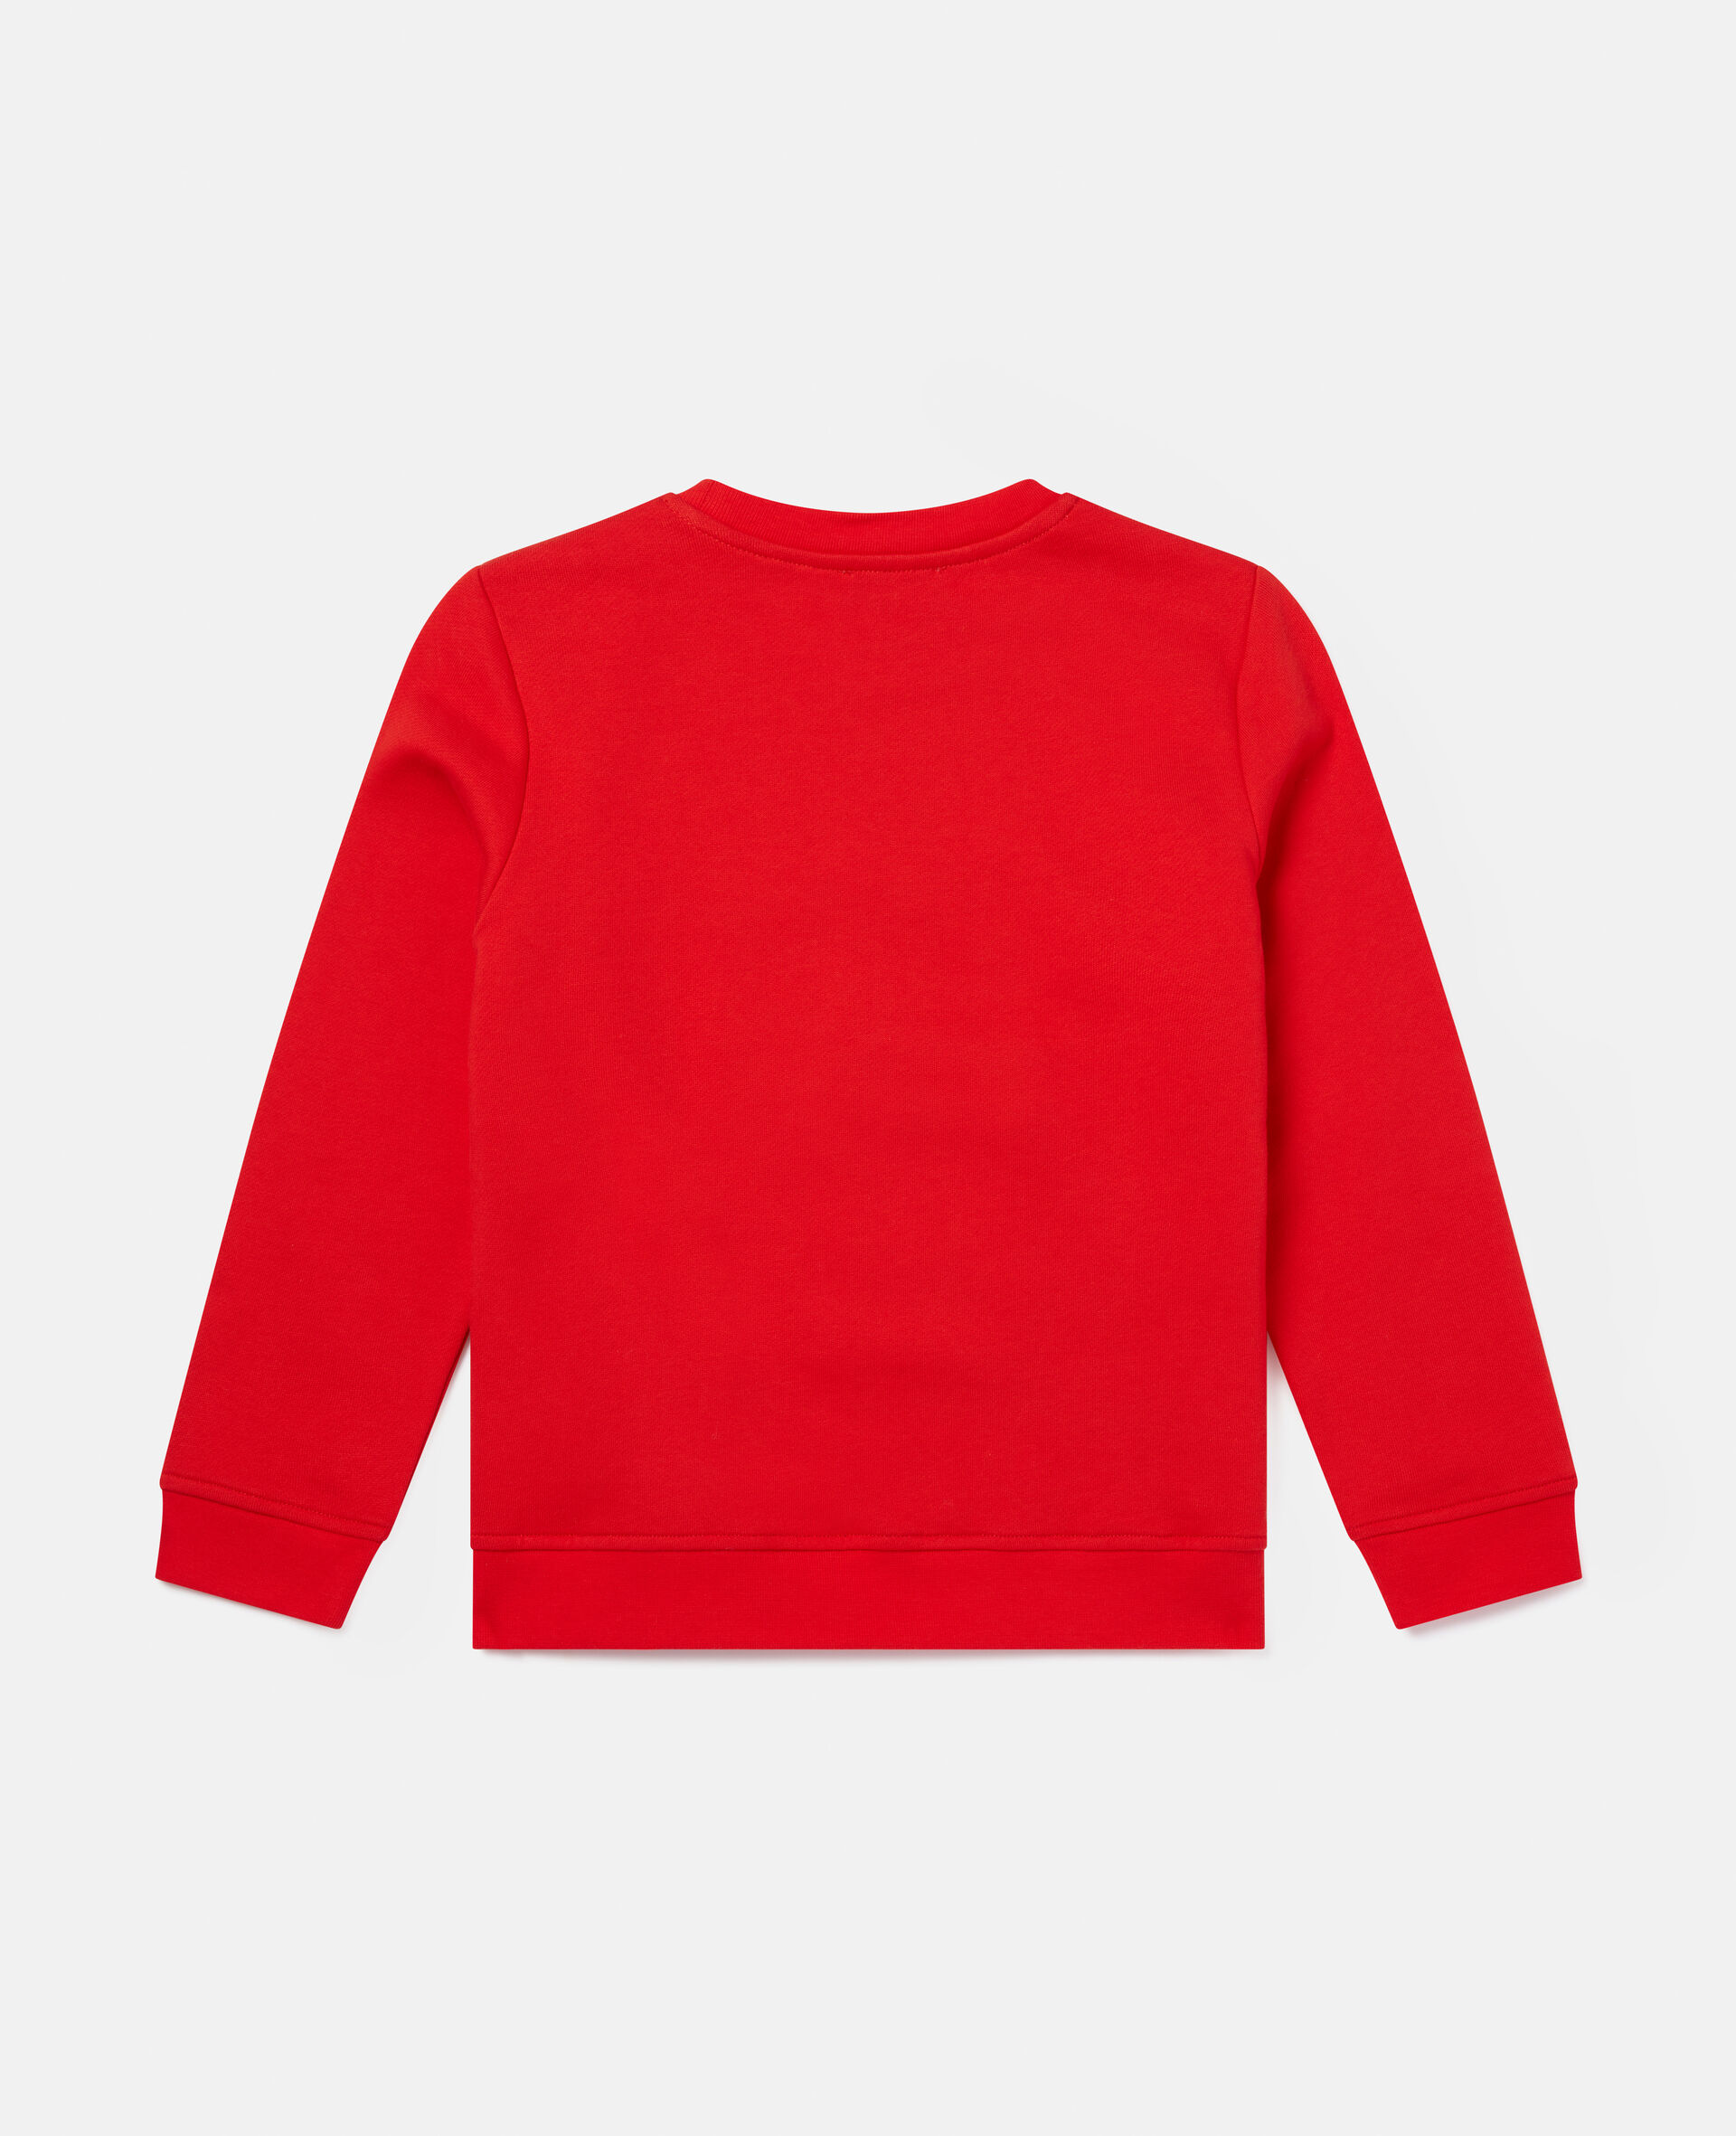 Zip Rainbow Face Fleece Sweatshirt-Red-large image number 3